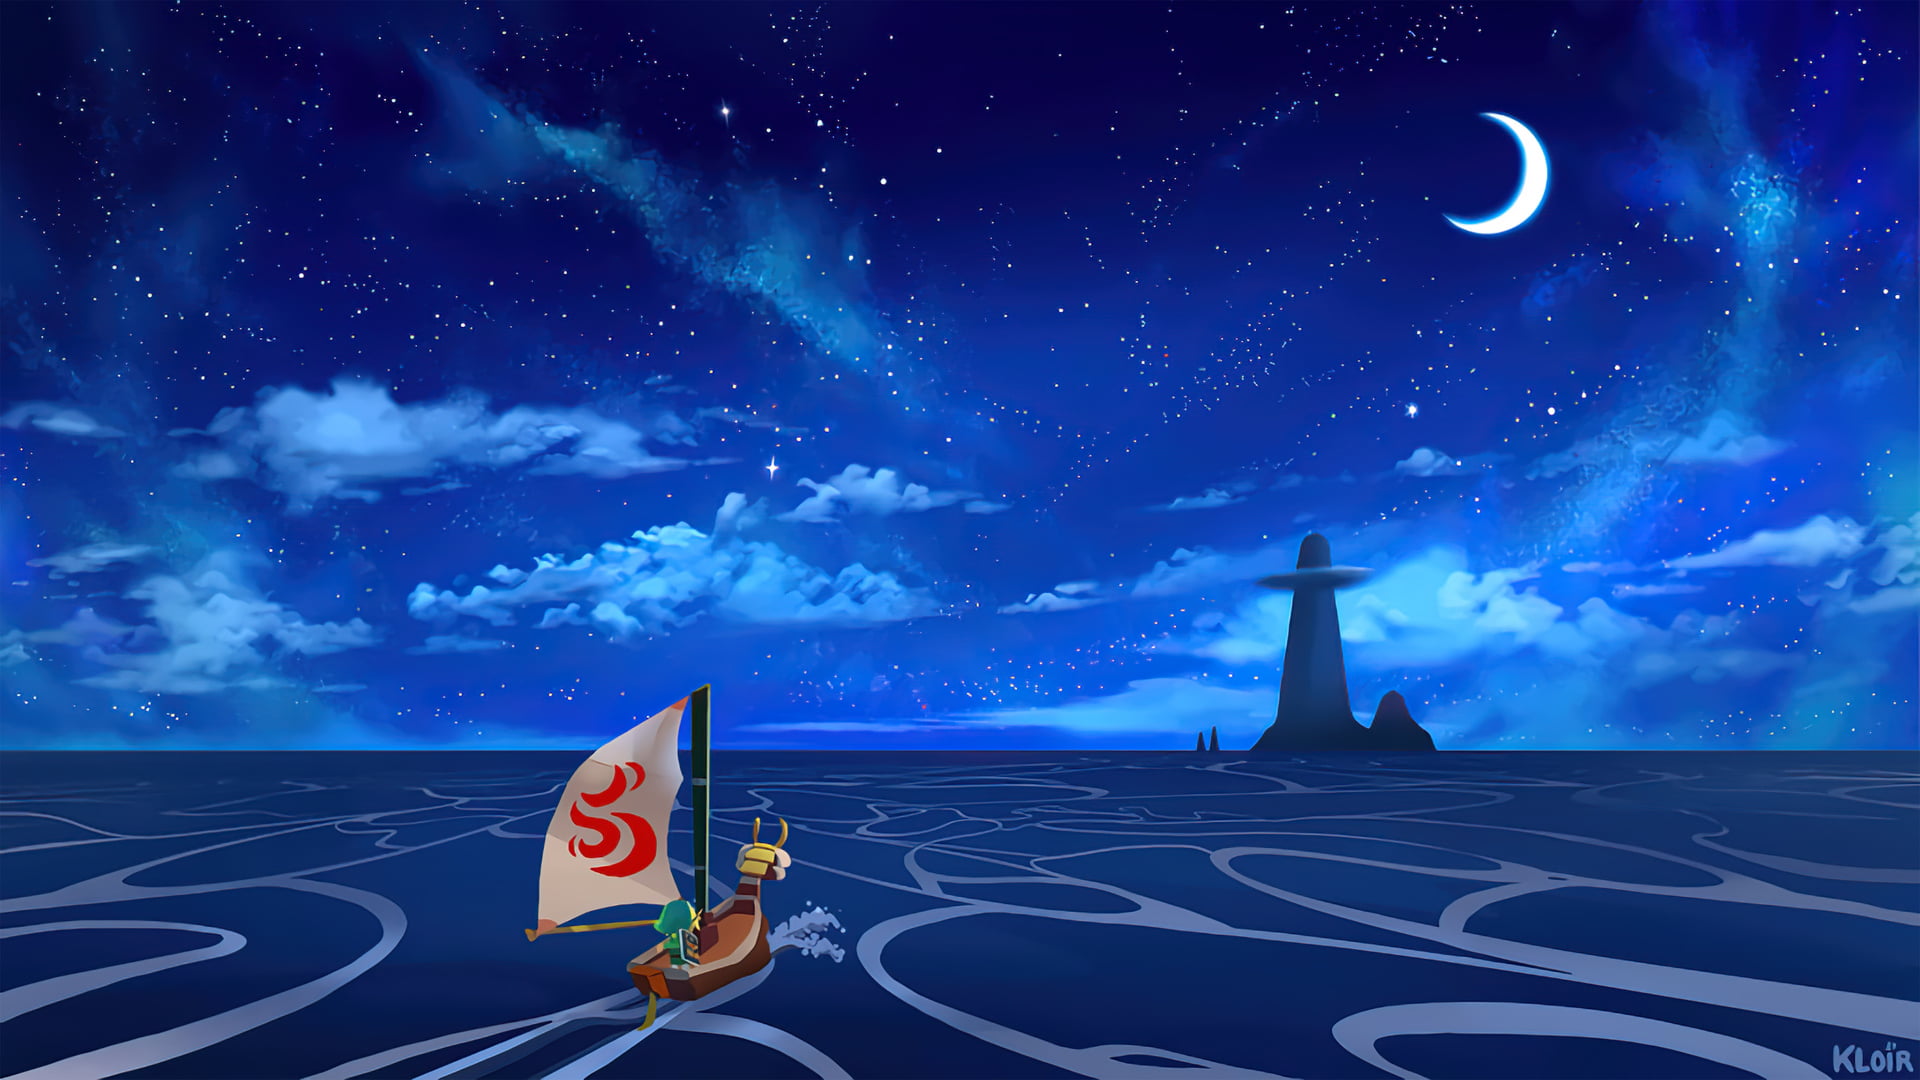 The Legend of Zelda, The Legend of Zelda: The Wind Waker, ocean view